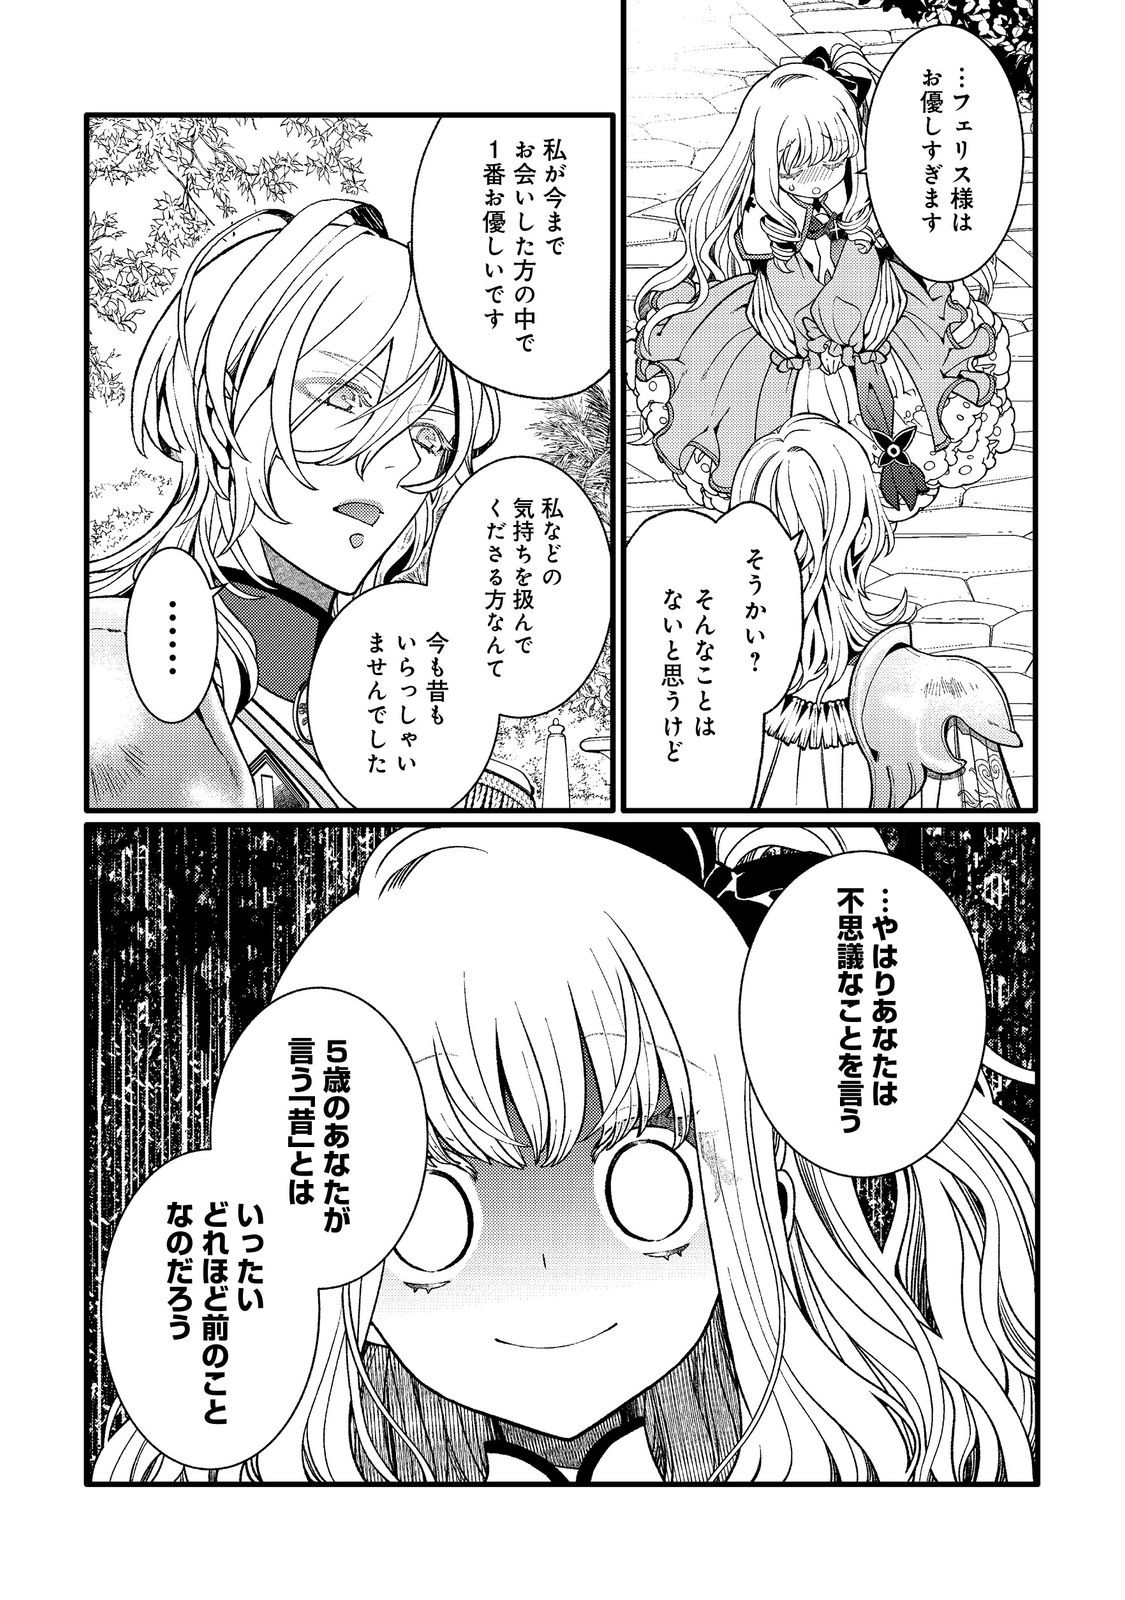 5-sai de, Ryuu no Ou Otoutou Denka no Hanayoume ni Narimashita - Chapter 2.1 - Page 4